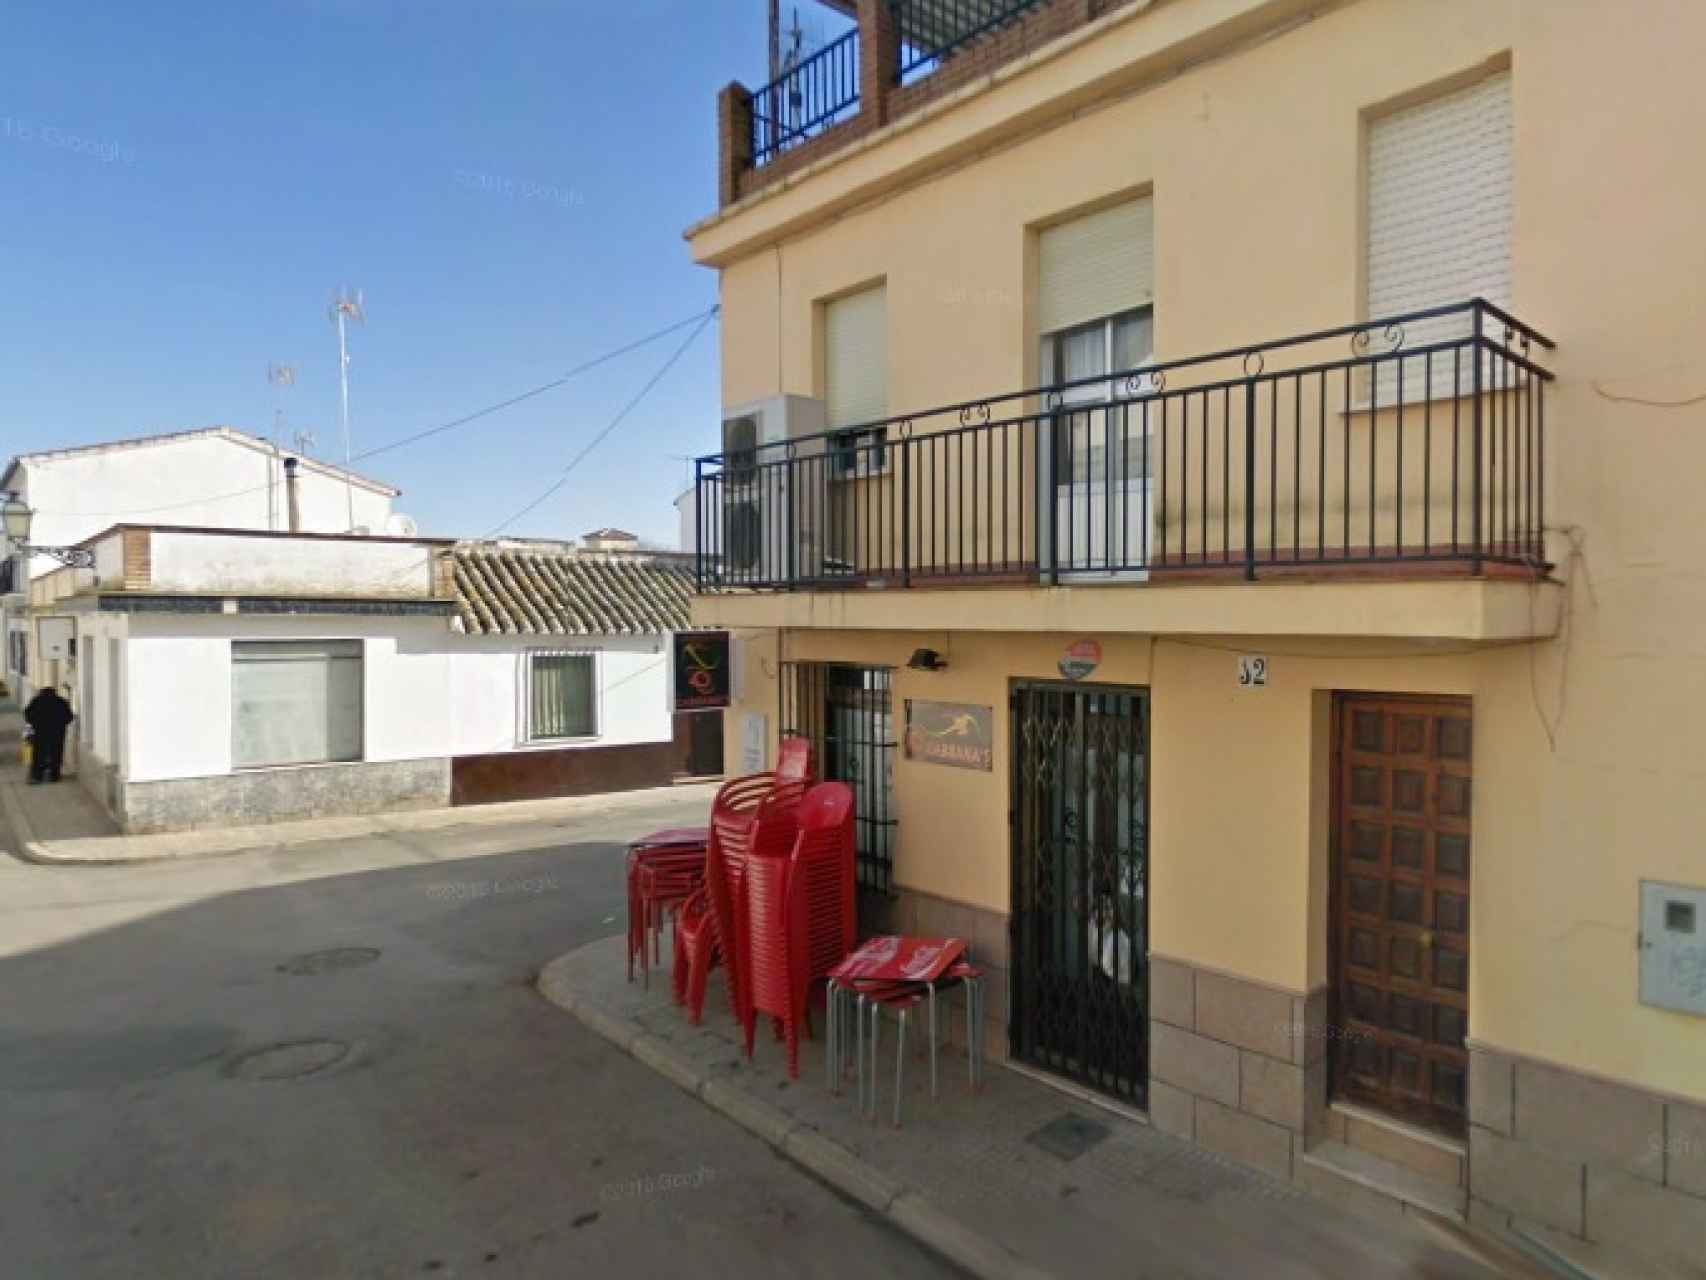 El 10 de diciembre de 2017 ocurrieron los hechos. A la mujer le introdujeron droga en la bebida este bar de Bobadilla, una pedanía de Antequera.